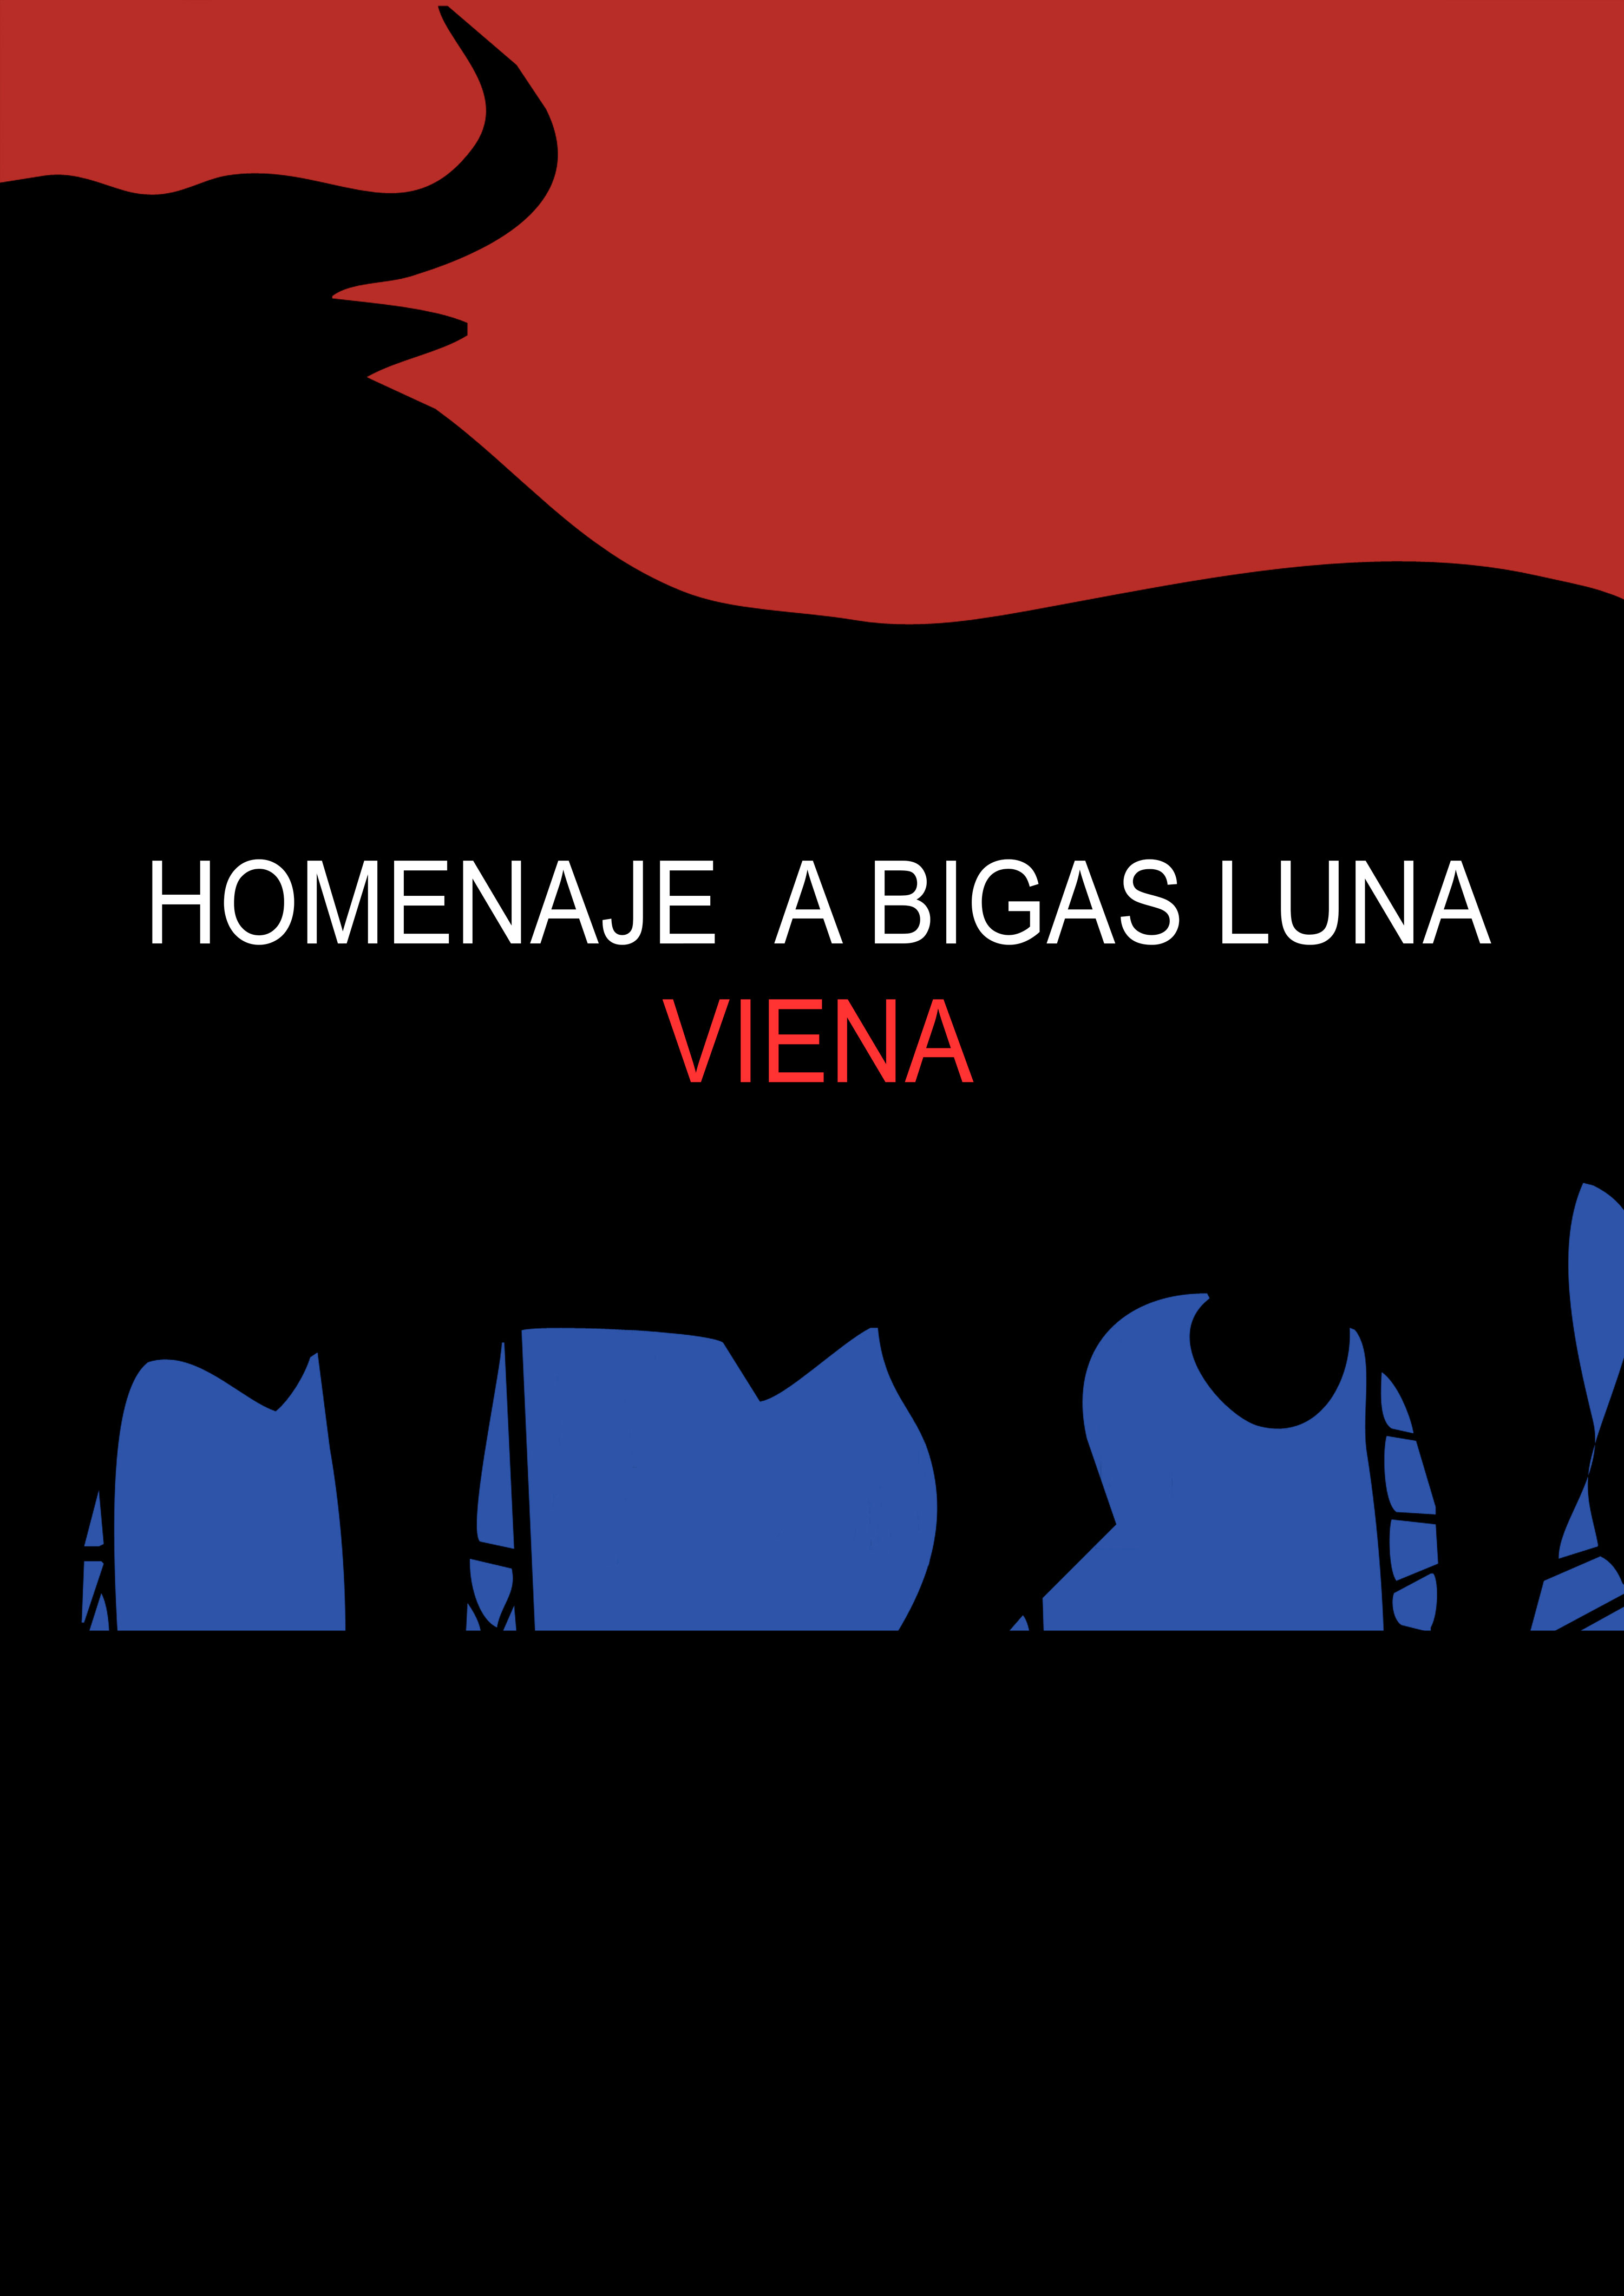 El legado de Bigas Luna